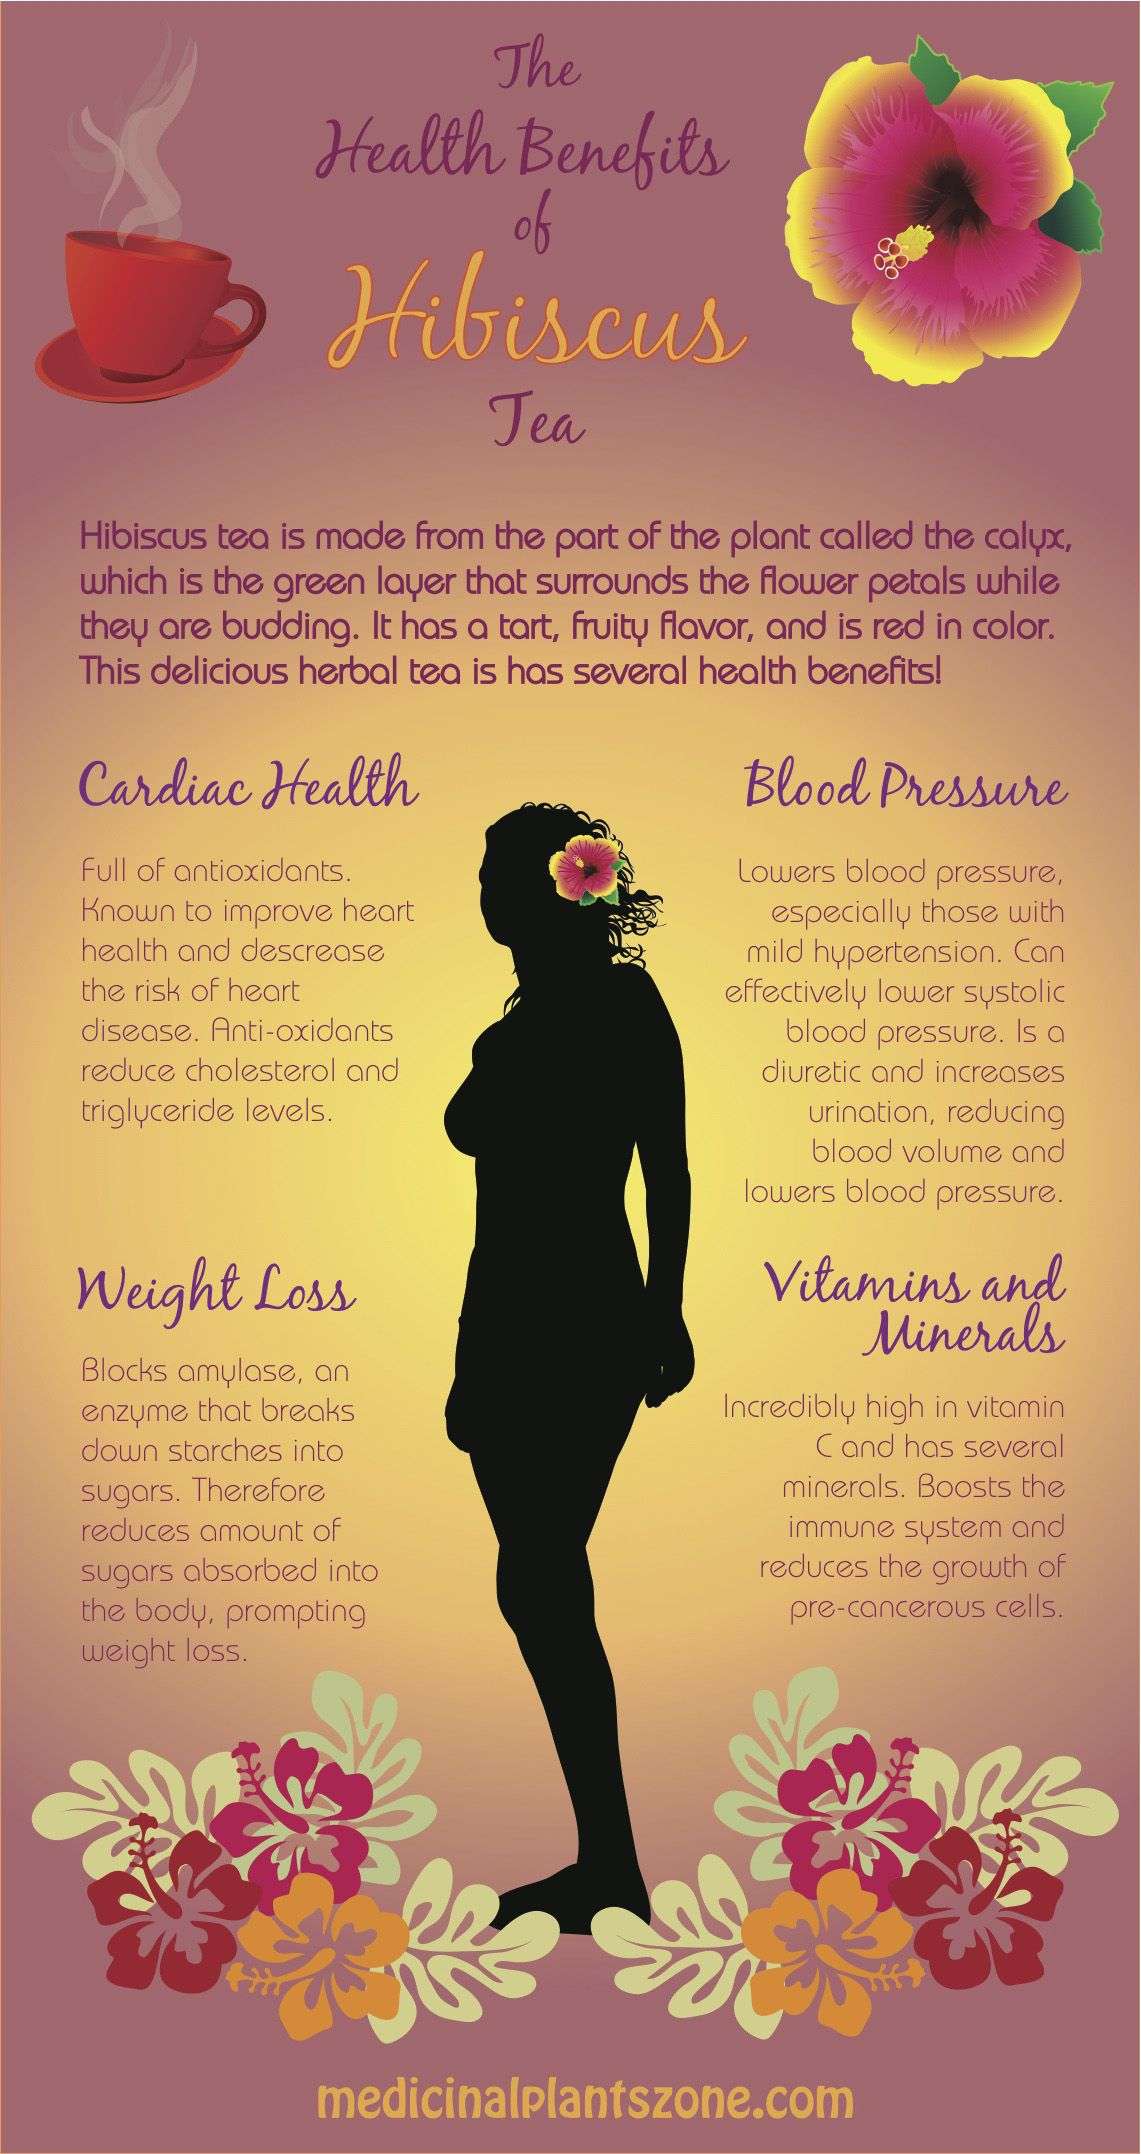 The amazing health benefits of Hibiscus Tea